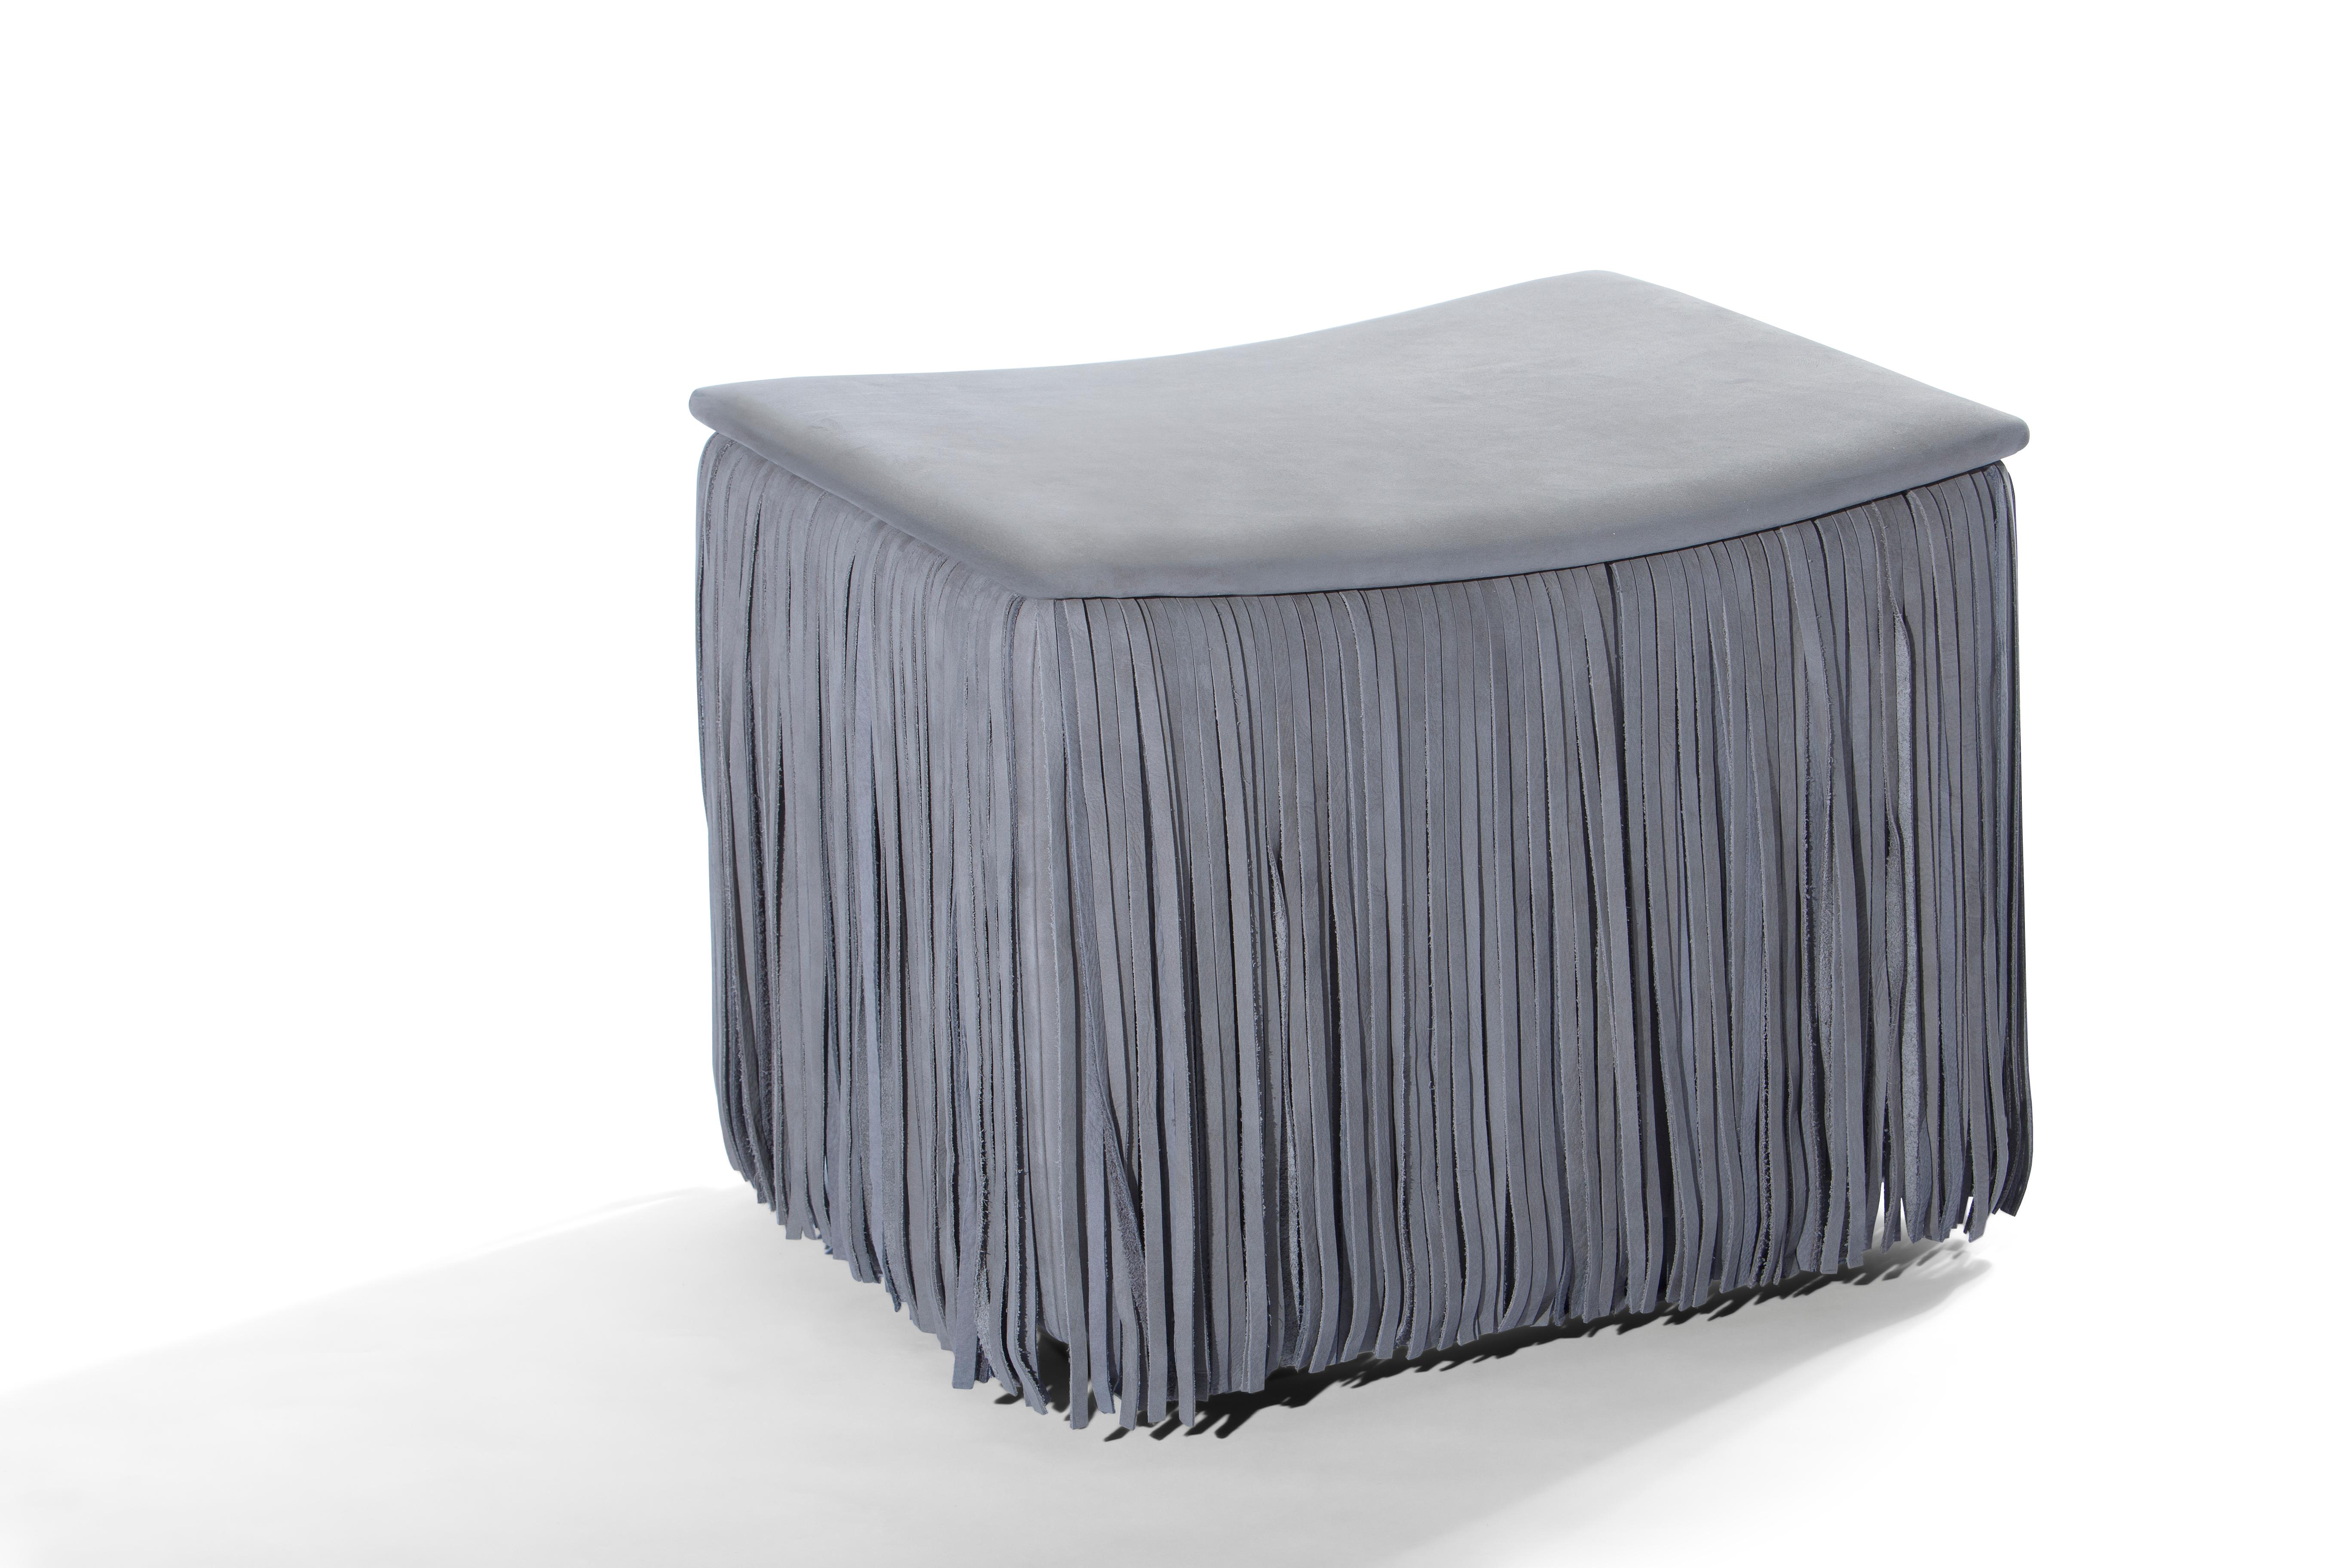 Le TAGLIA introduit l'élément de mode intemporel des franges dans le design des meubles de haute qualité. Ce petit pouf carré ludique à l'assise incurvée est entouré d'une jupe dense de franges en cuir Nabuk et apporte à votre espace de vie une